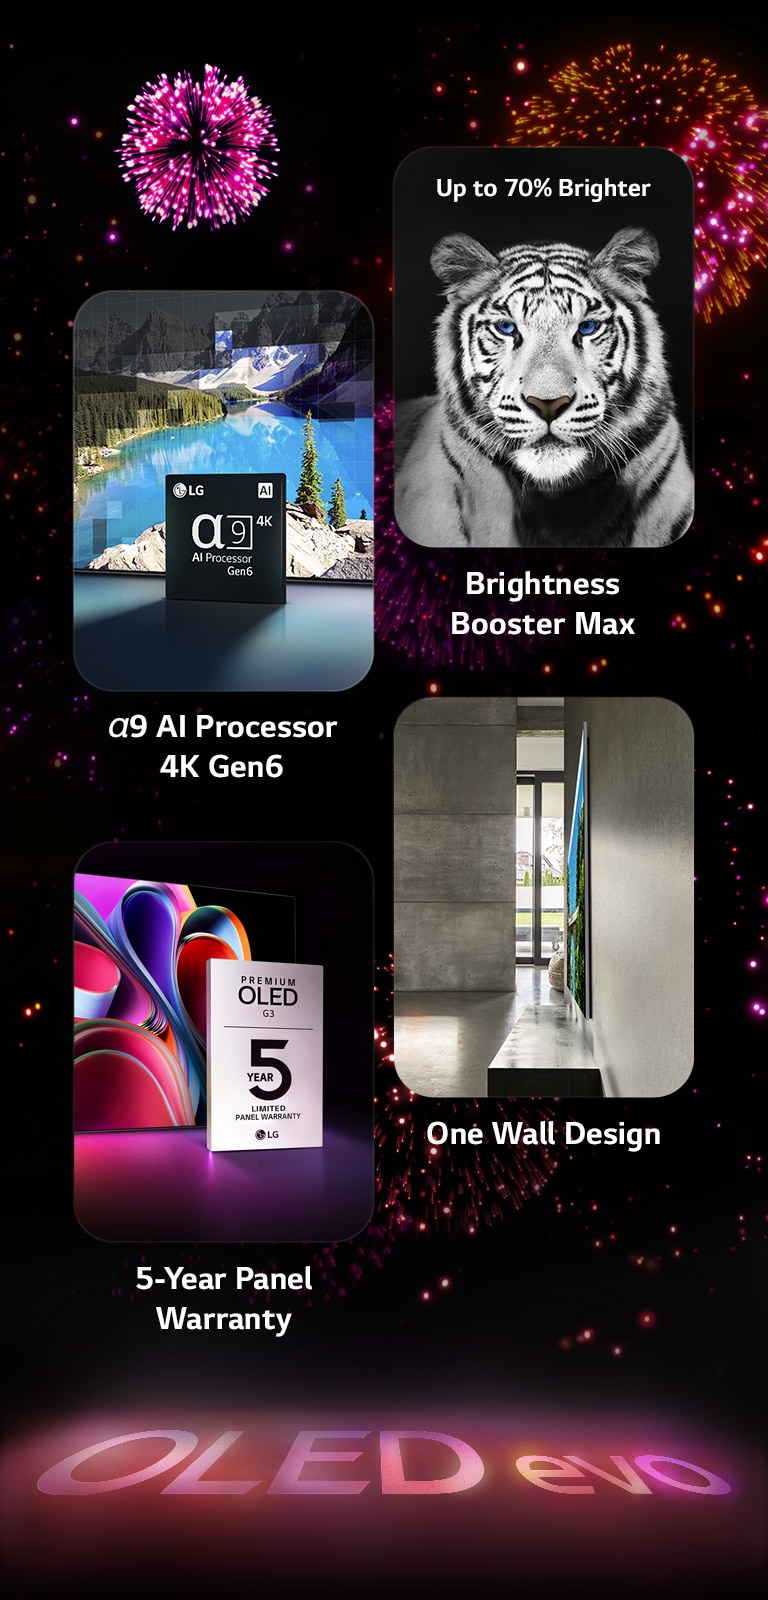 影像顯示黑色背景下 LG OLED evo G3 的主要功能，背景以粉紅色和紫色花火點綴。花火的粉紅色倒影在地面上顯示「OLED evo」字樣。圖片中，描繪 α9 Gen6 4K AI 處理器的影像展示晶片立於一張使用處理技術重新製作的湖景圖片前。影像展示 Brightness Booster Max 亮度提升技術，呈現一隻對比強烈和白色明亮的老虎。影像展示 5 年面板保養，呈現優質卓絕的 OLED G3 保養標誌，顯示器則在背景中。影像展示 One Wall Design，呈現 LG OLED evo G3 緊貼牆面，置於灰色工業風格生活空間之中。